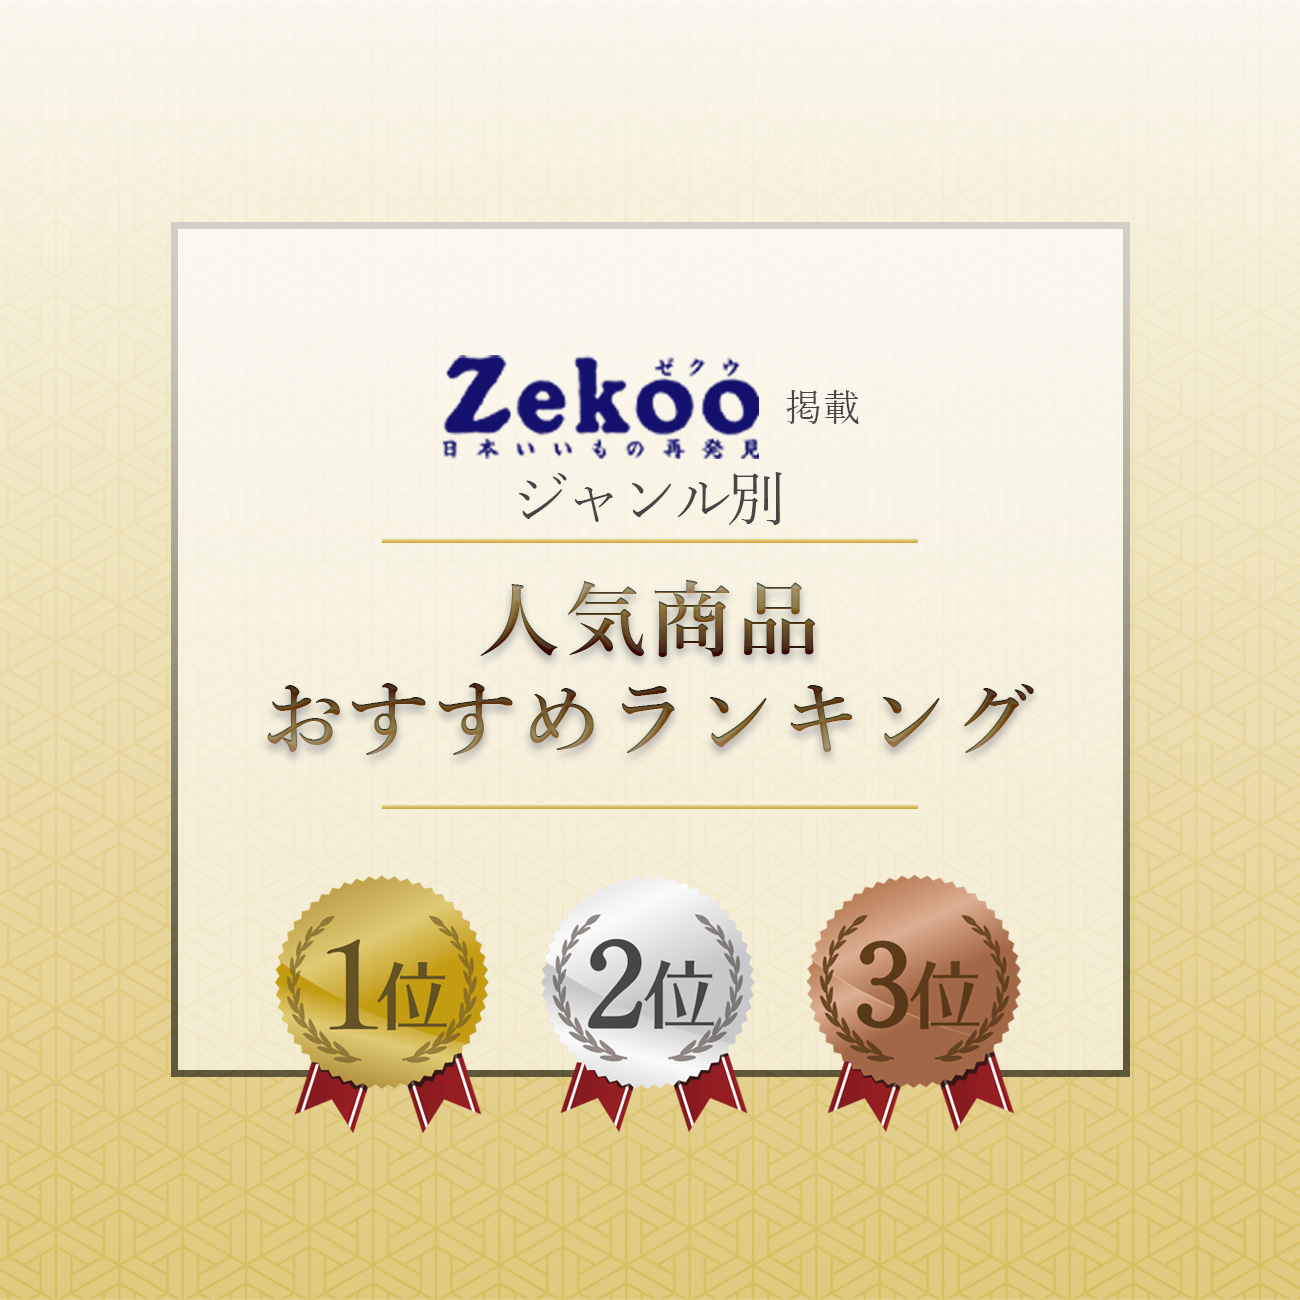 【特集】Zekoo 人気商品おすすめランキング